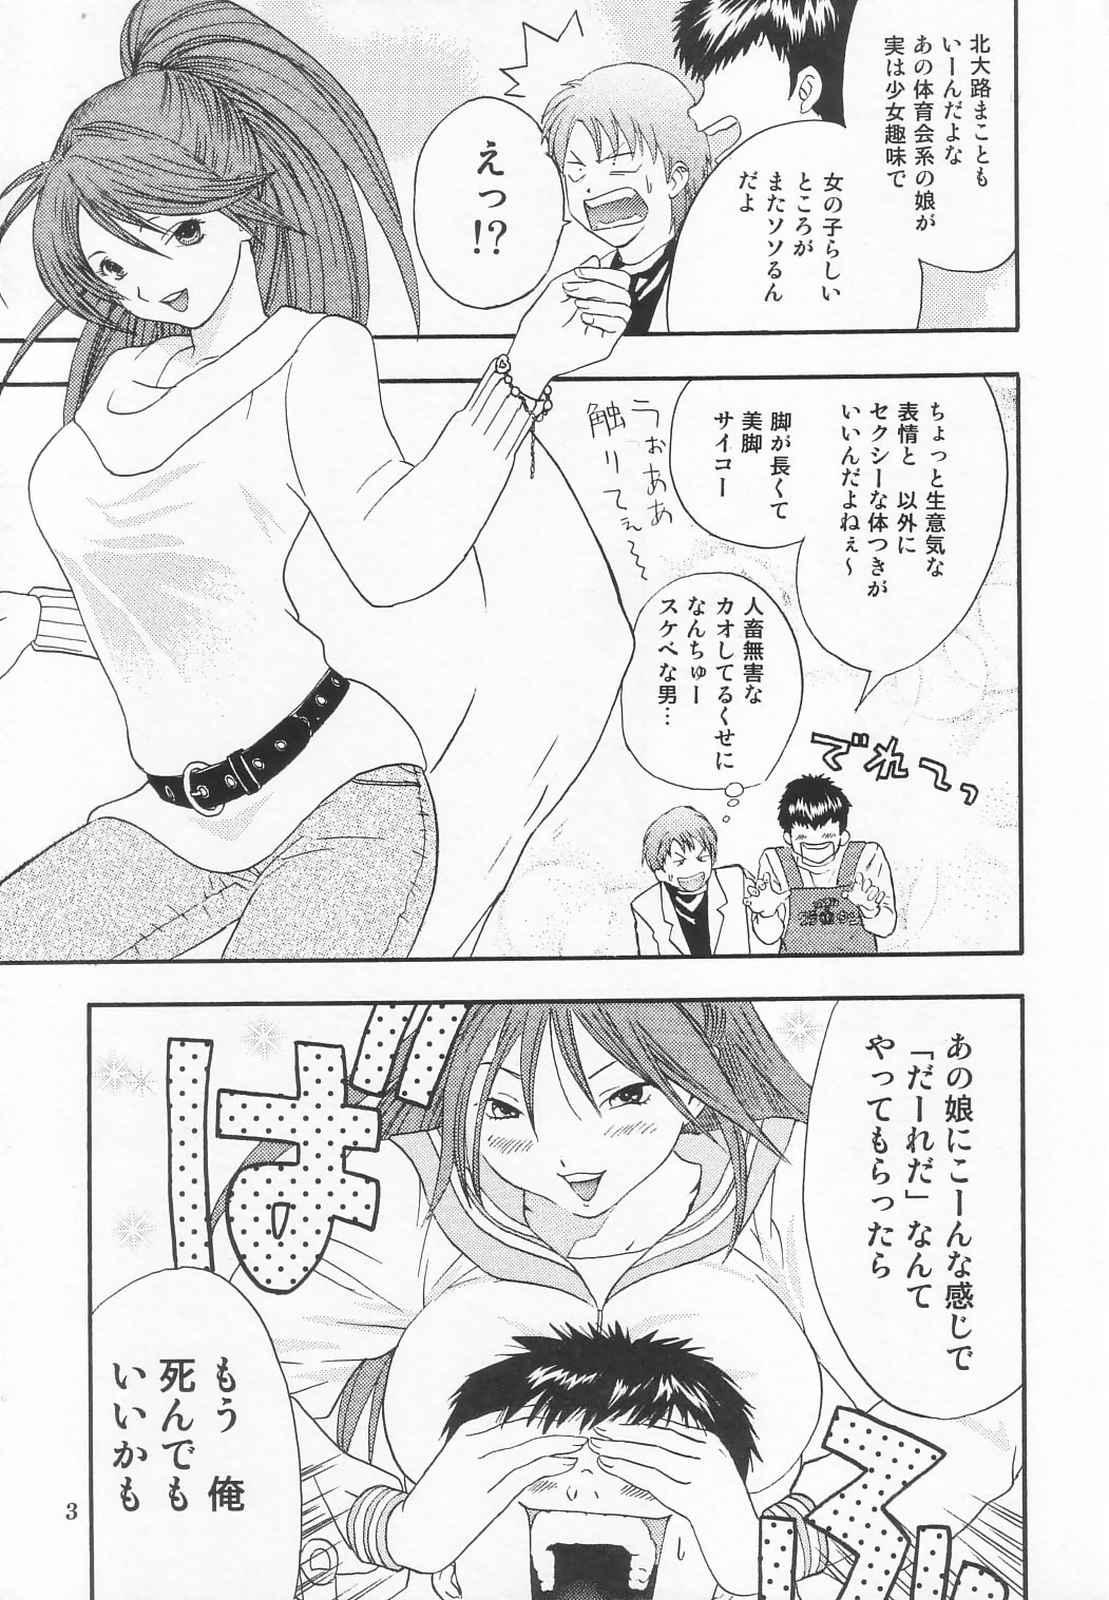 Gay 3some Tokusatsu Magazine x 2003 Fuyu Gou - Sailor moon Ichigo 100 Flash - Page 5